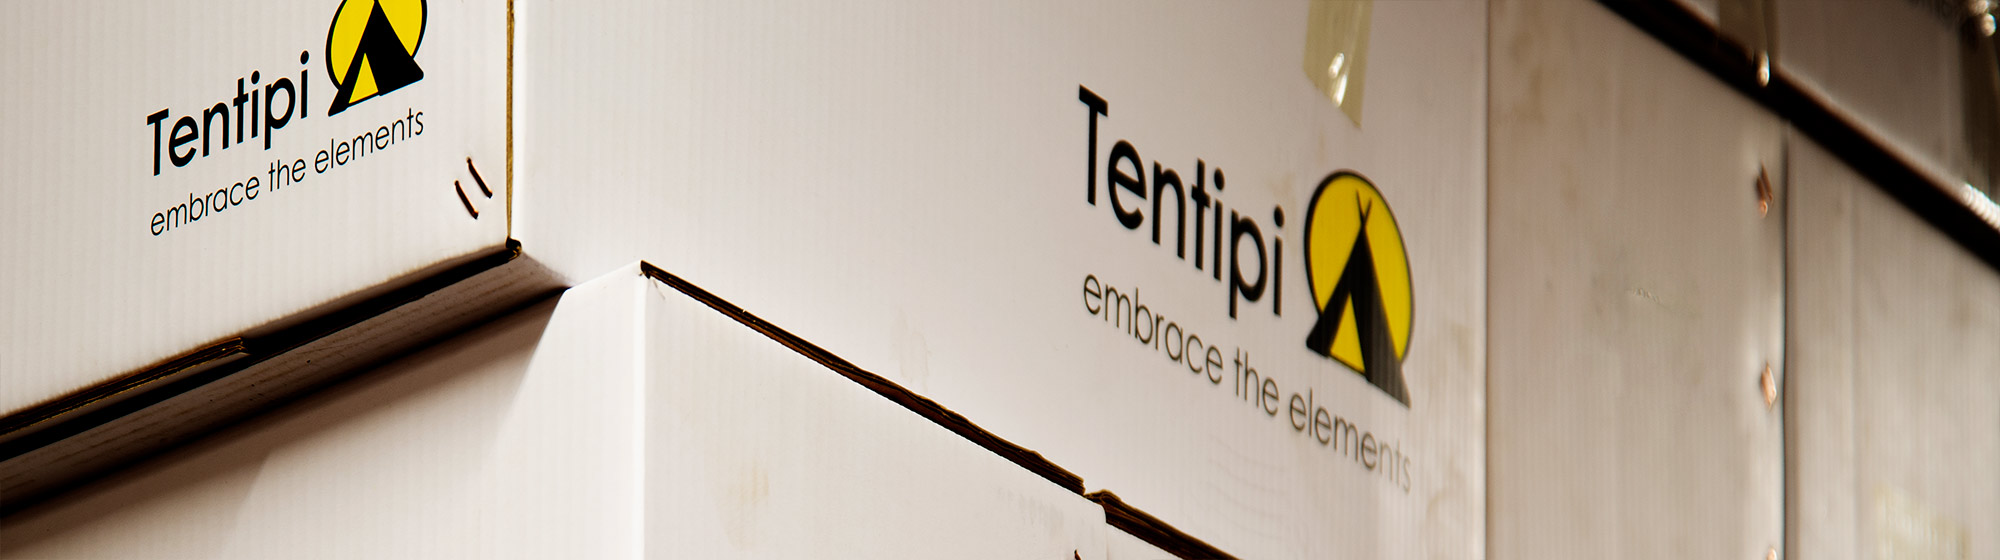 Hur hanterar Tentipi förpackningar och emballage?